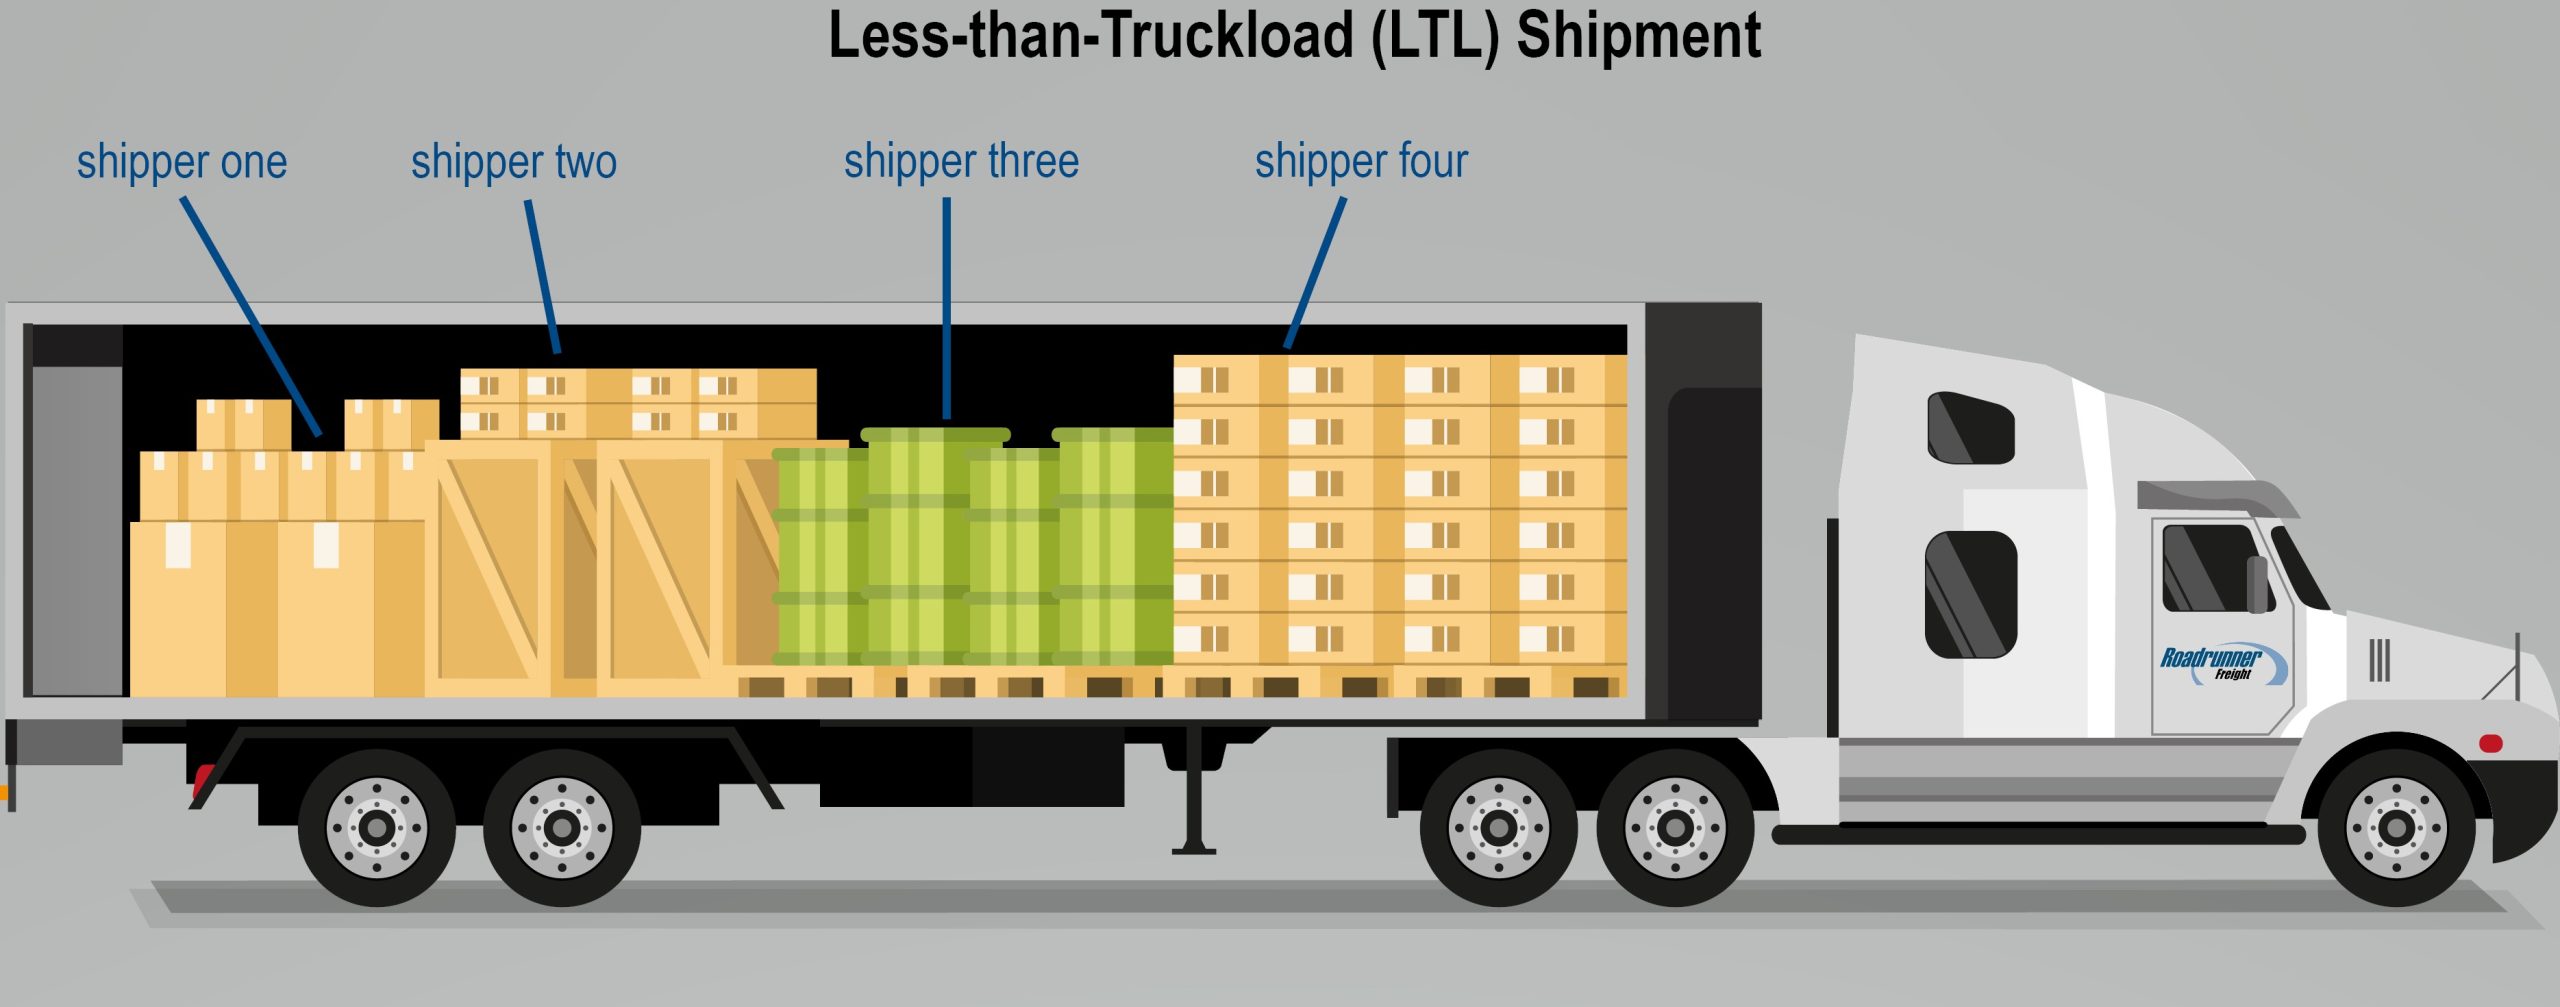 بار ناقص کامیونی LTL (Less than Truckload)